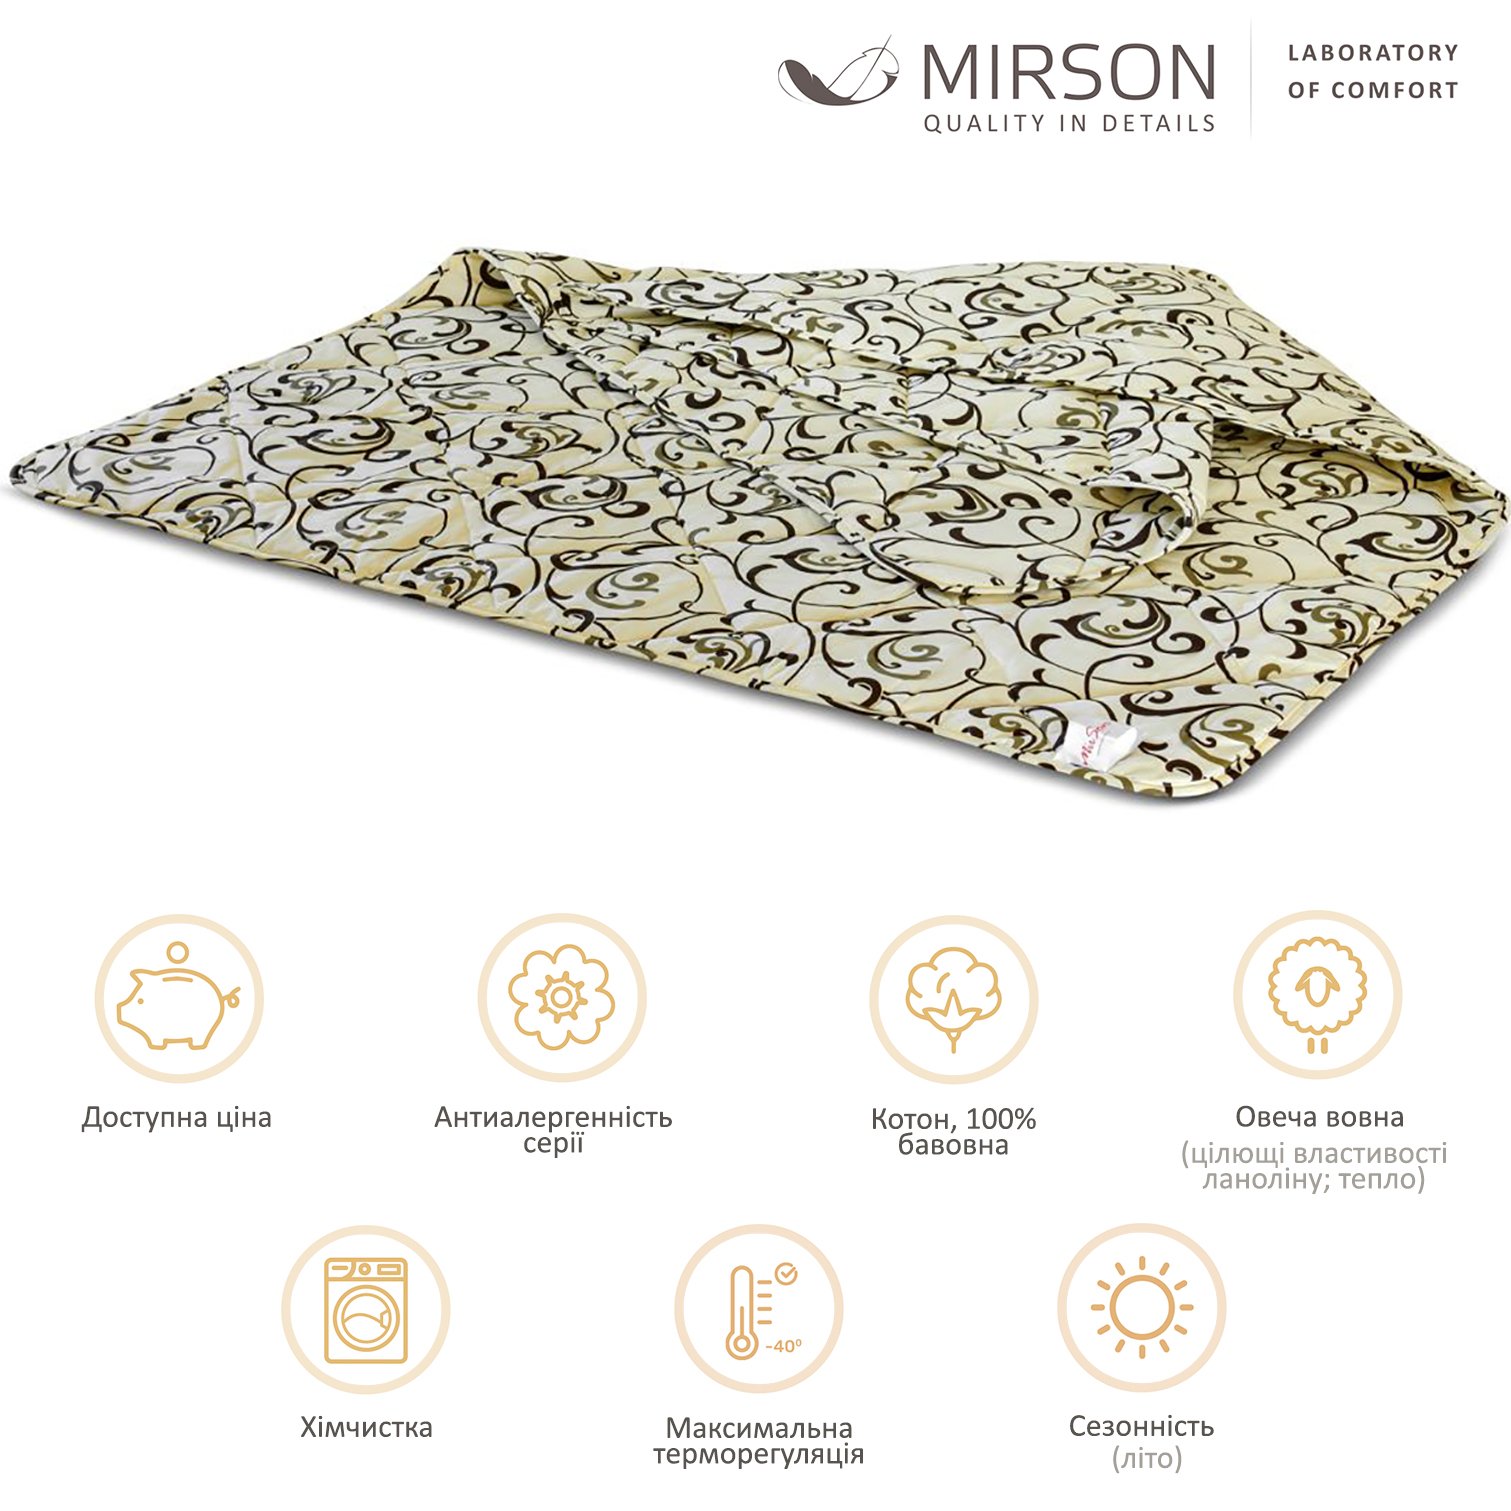 Одеяло шерстяное MirSon №016, летнее, 200x220 см, бежевое с узором - фото 4